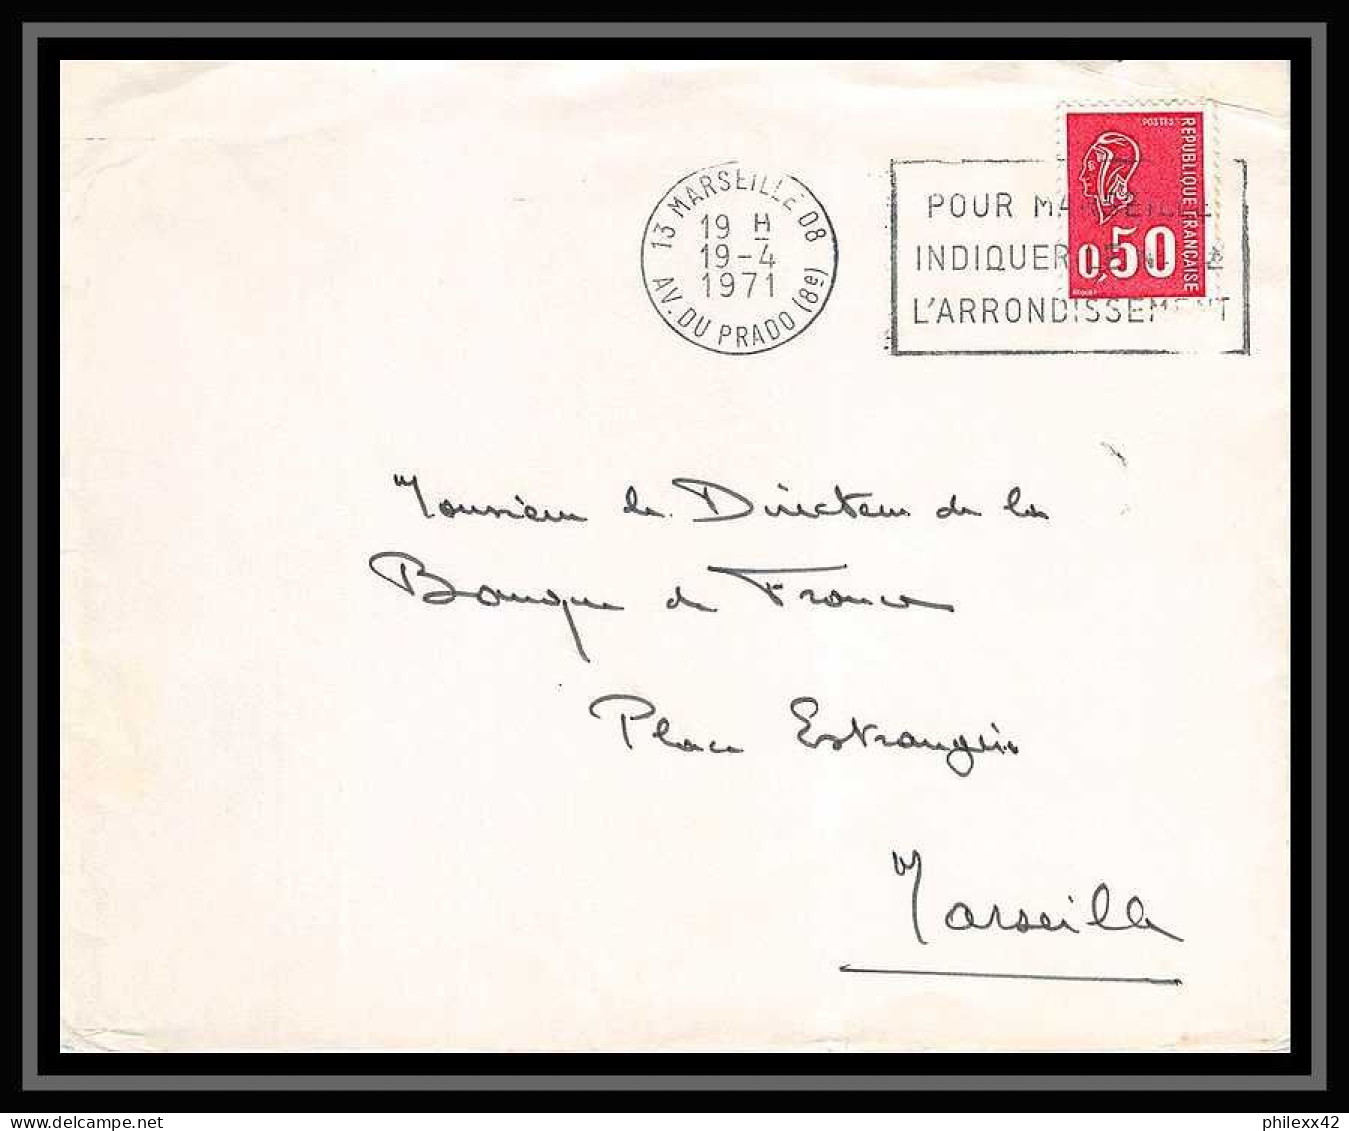 116585 lot de 13 Lettres dont recommandé Bouches du rhone Marseille Prado